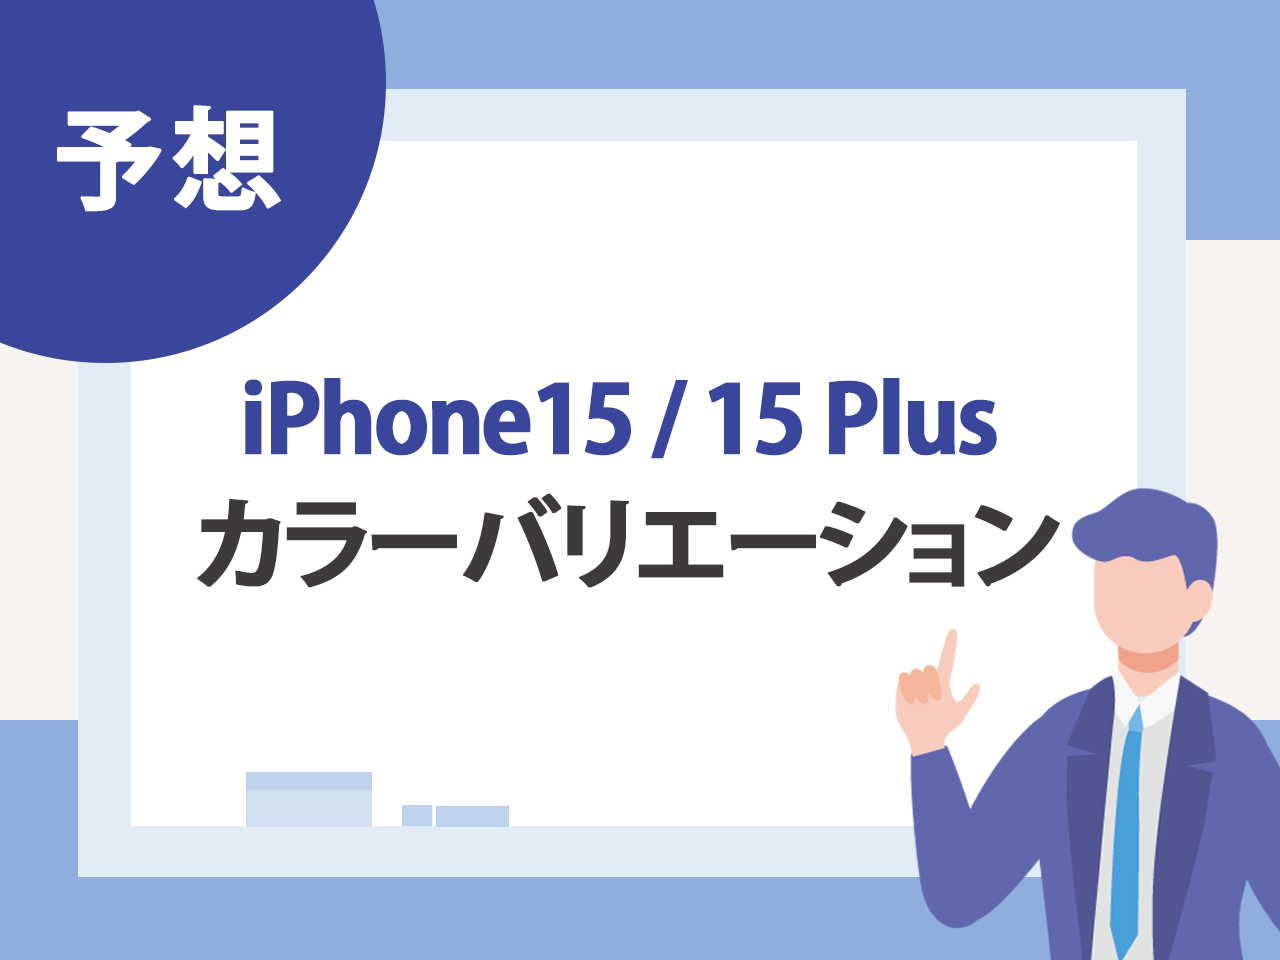 iPhone15 / 15 Plusのカラー